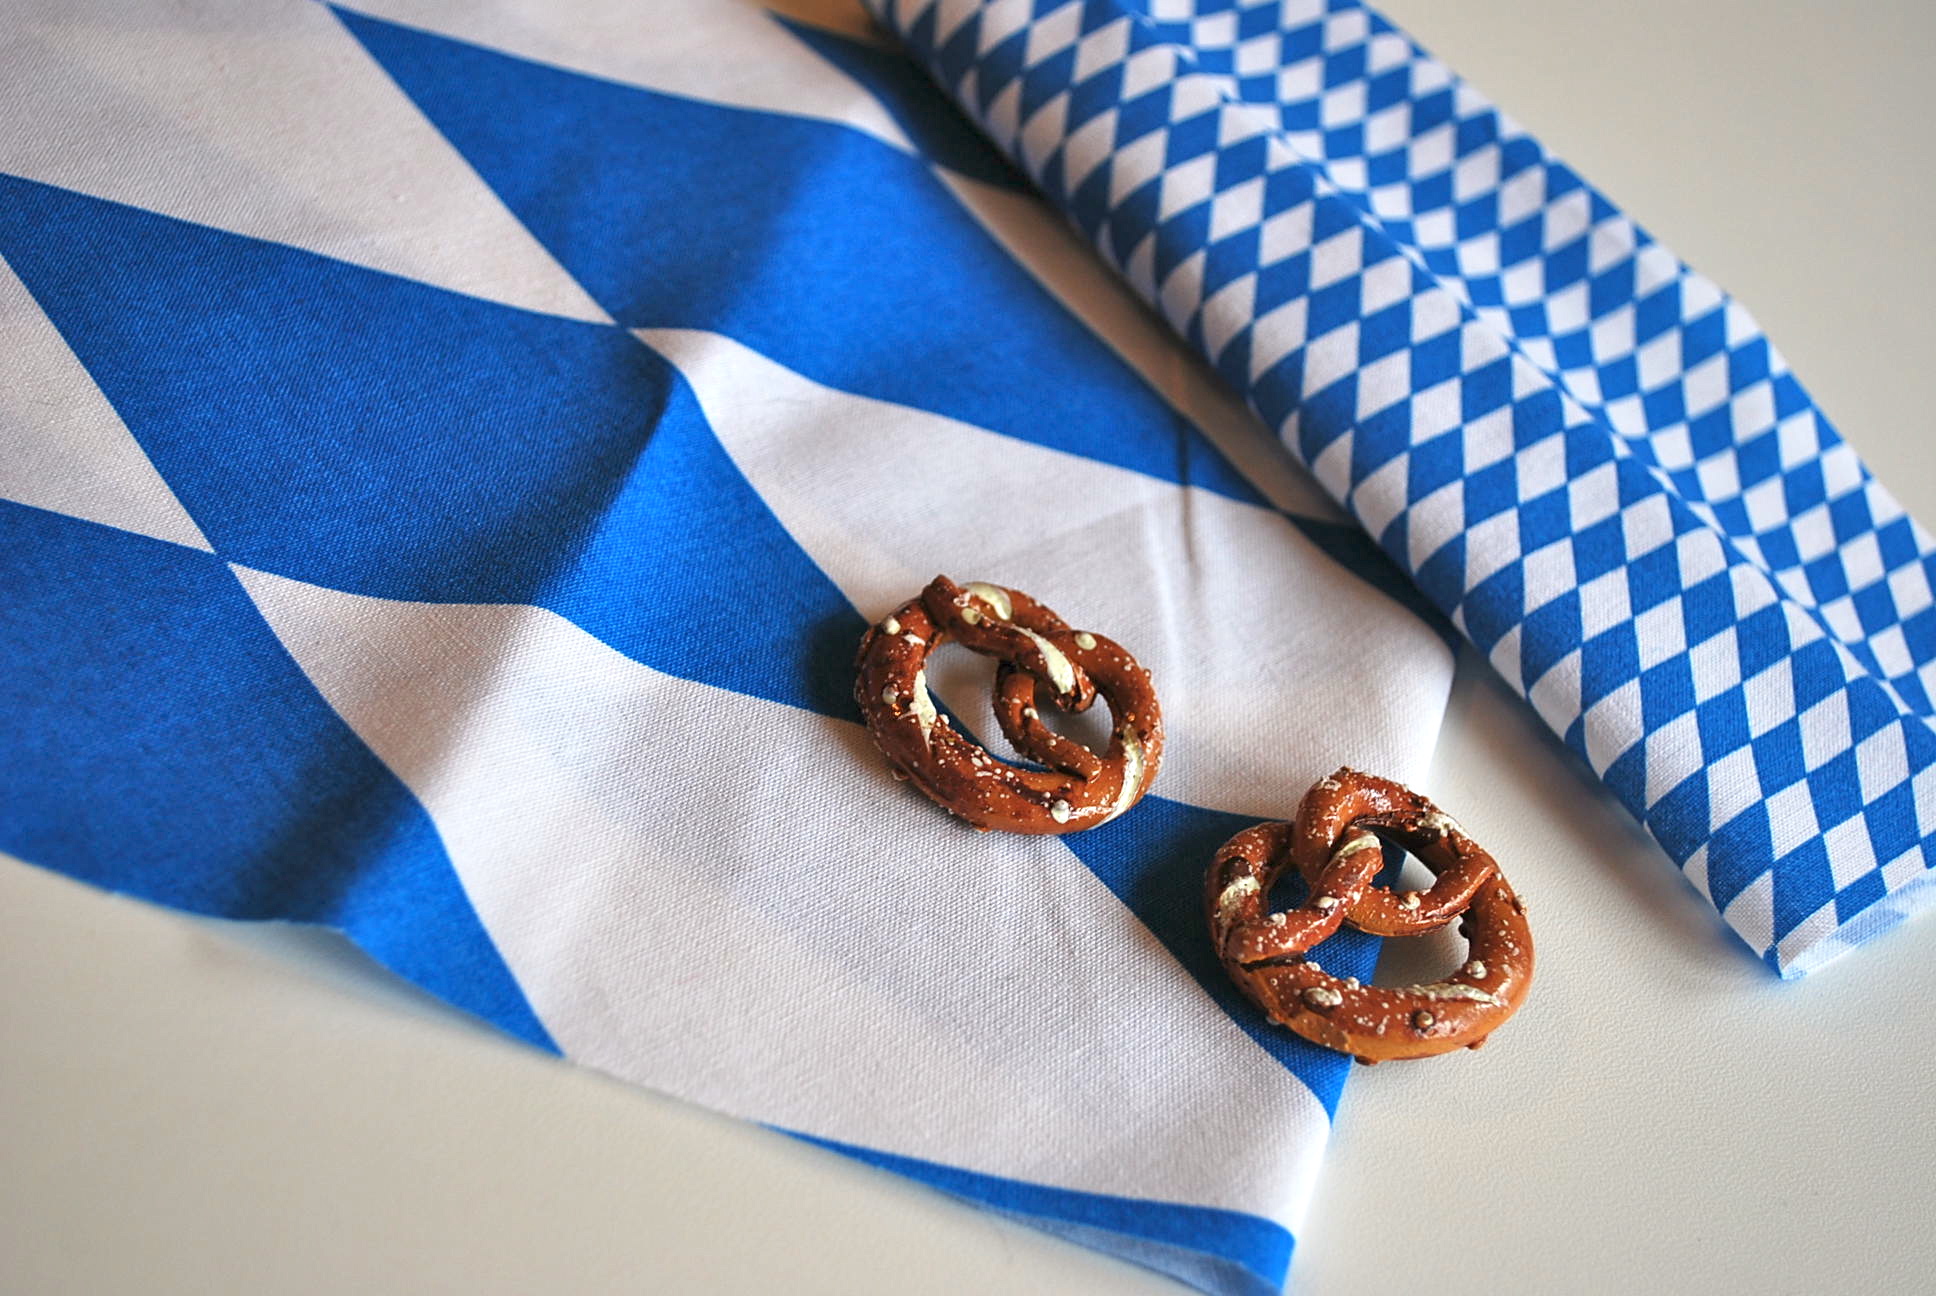 Bavaria Fabric and Pretzels